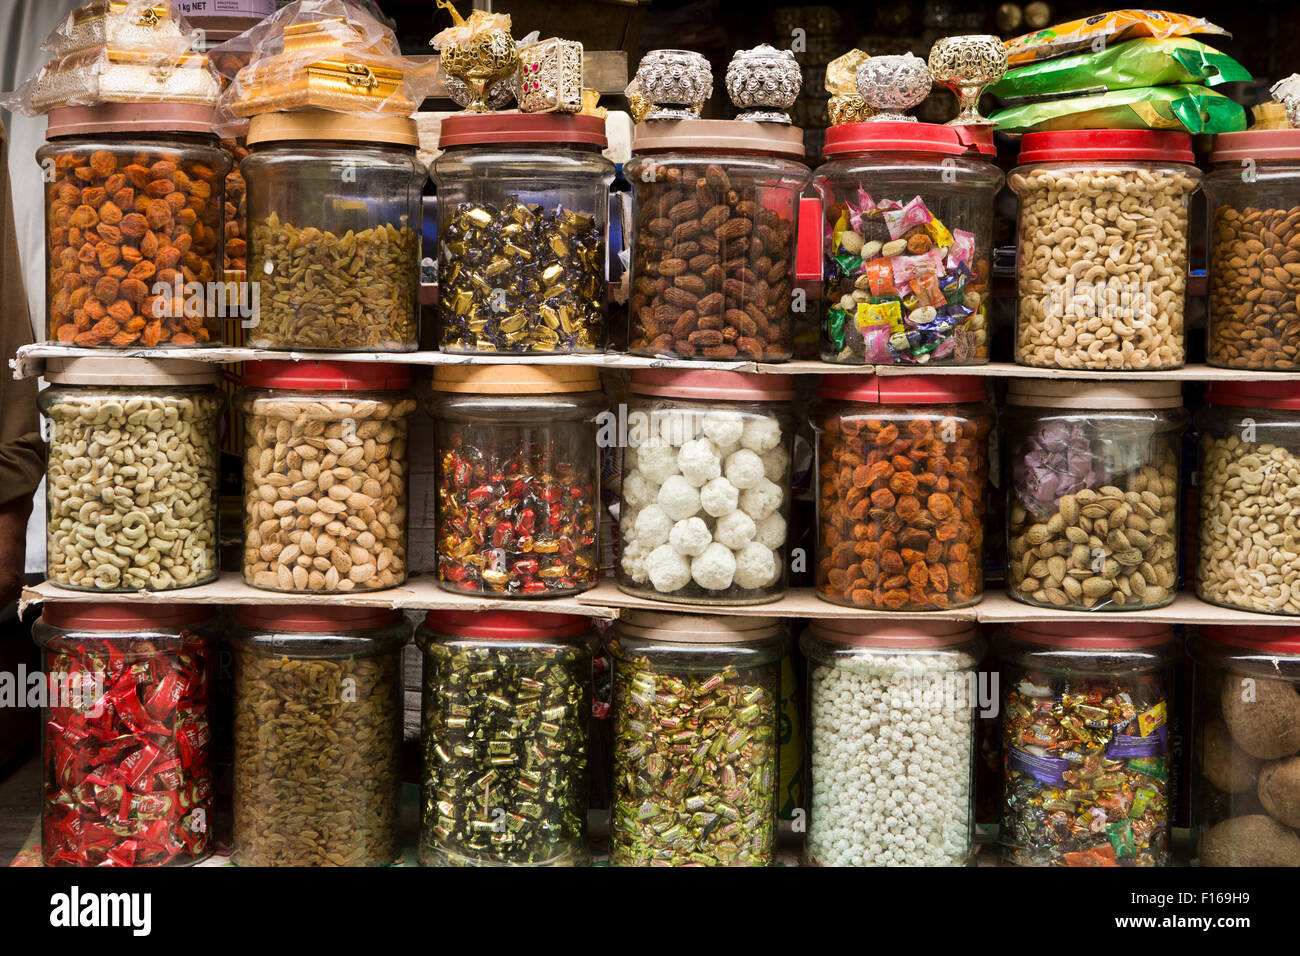 L'Inde, le Jammu-et-Cachemire, Srinagar, vieille ville, Sri Ranbir Gunj bazaar, bocaux de fruits secs à coque et des bonbons Banque D'Images